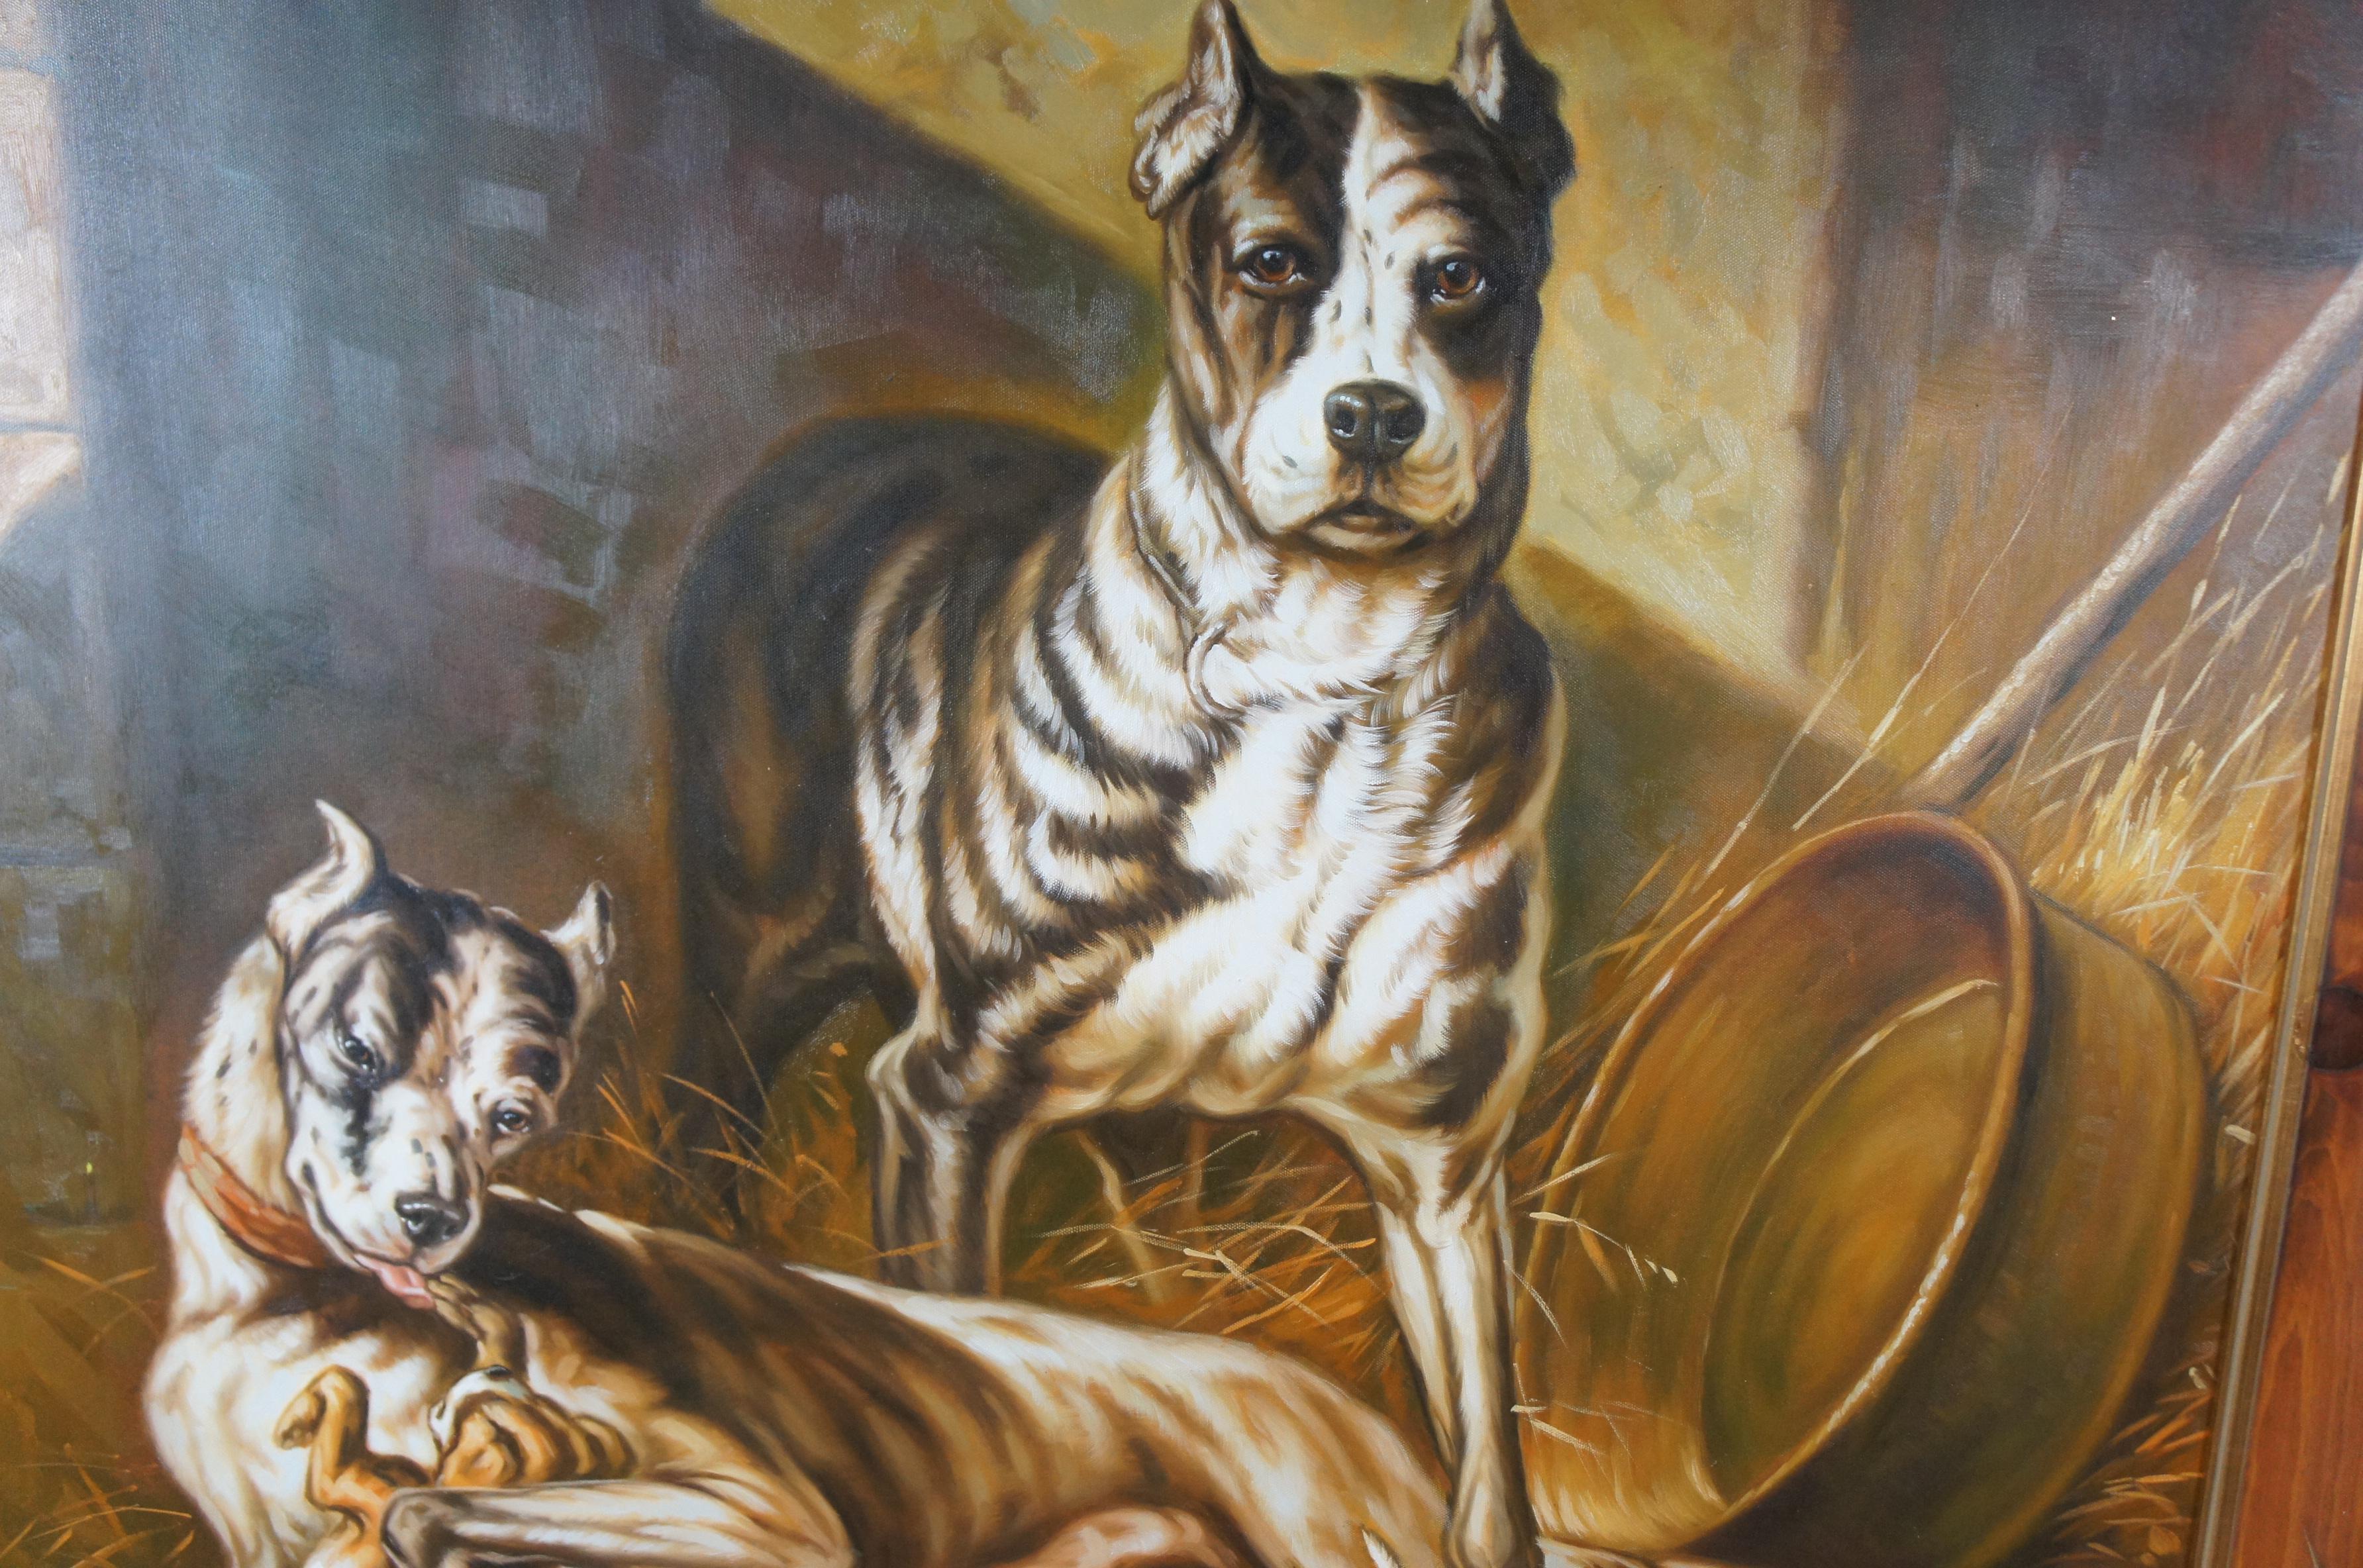 Portrait de famille anglaise d'un bulldog chien, peinture à l'huile sur toile 51